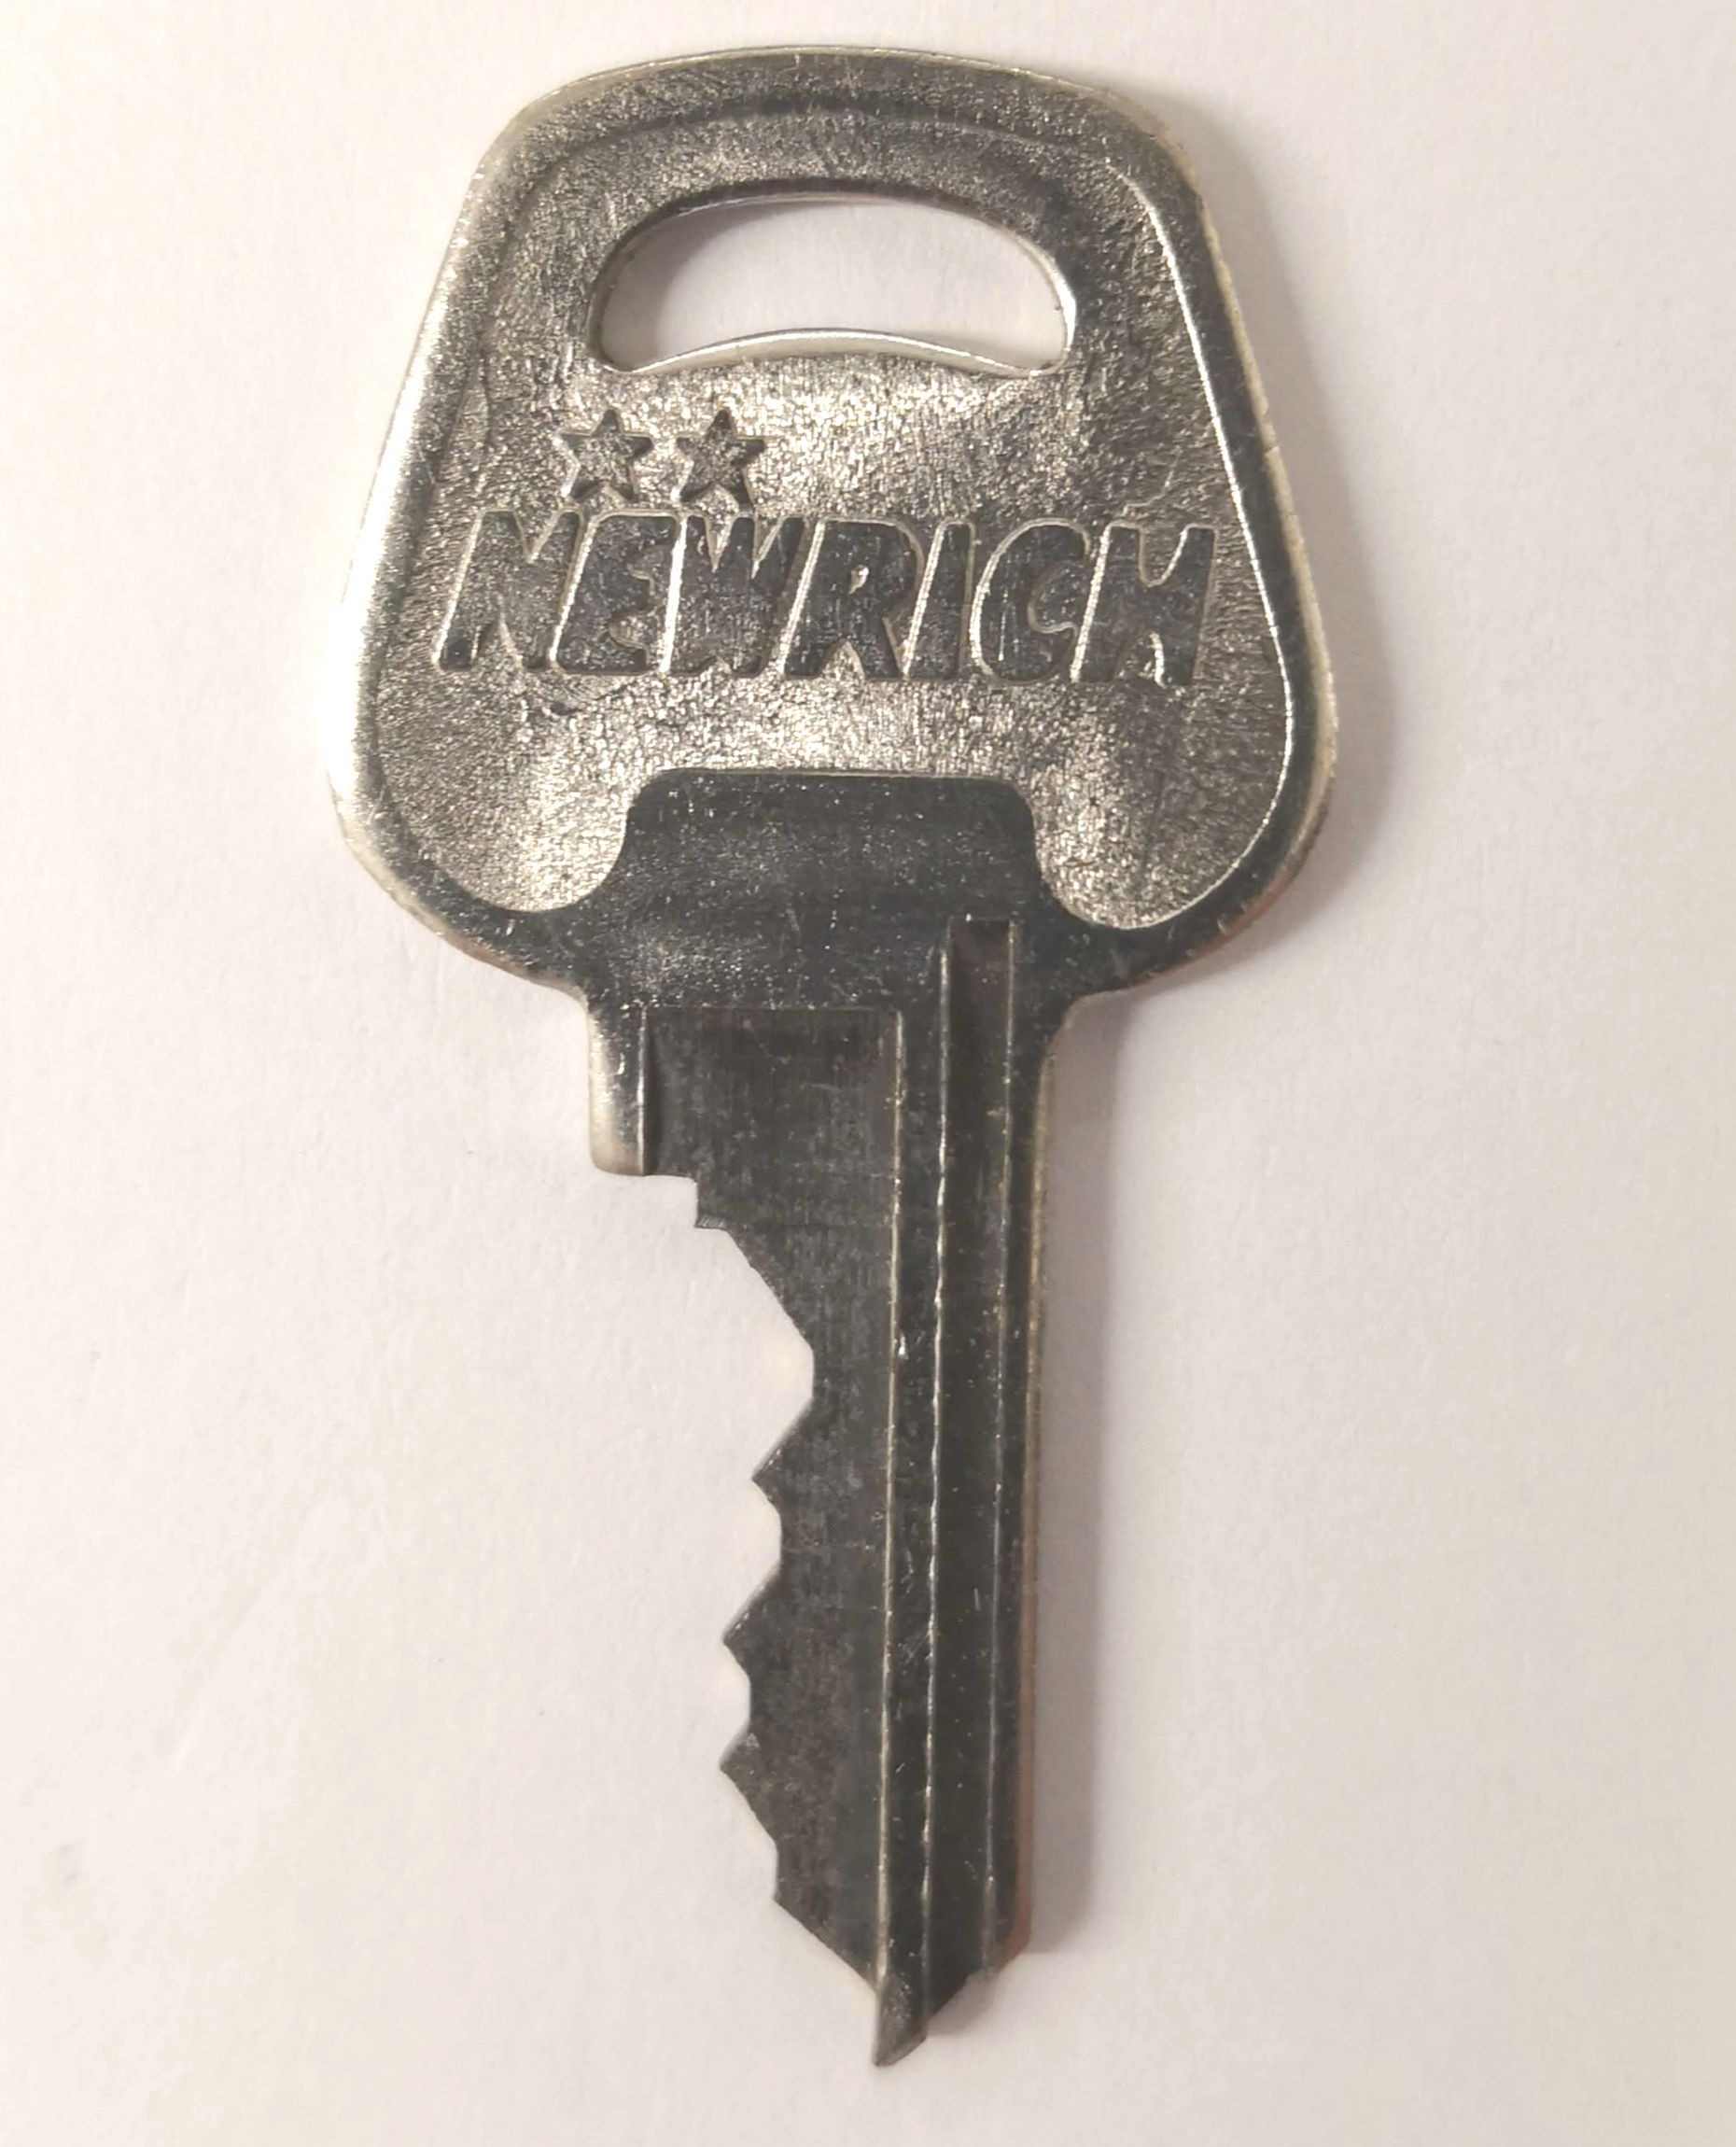 NEW RICH（ニューリッチ）納骨堂の鍵